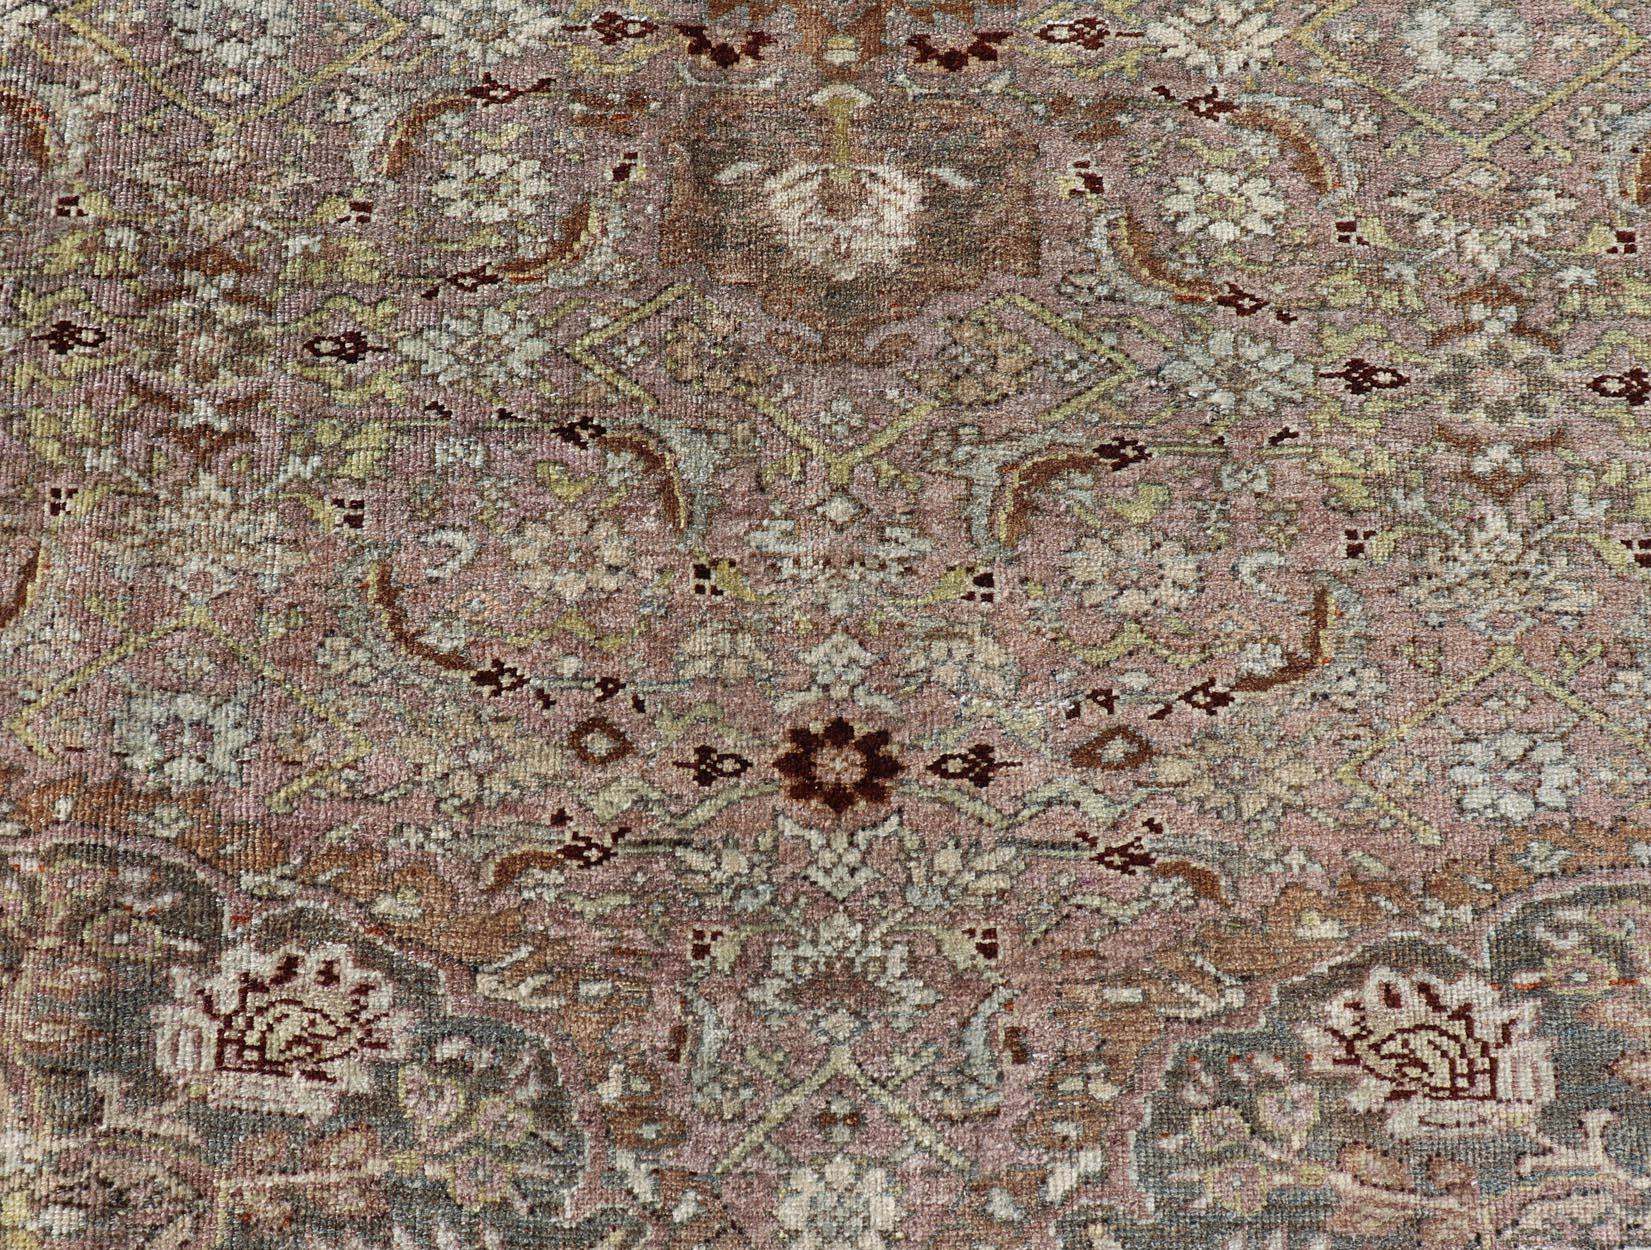 Mesures : 4'4 x 6'8 
 Ancien tapis persan Bidjar avec médaillon floral et fleurs de vigne. Keivan Woven Arts / tapis TU-MTU-4656, pays d'origine / type : Iran / Bidjar, vers 1910.

Ce tapis bidjar ancien présente un médaillon central entouré d'un